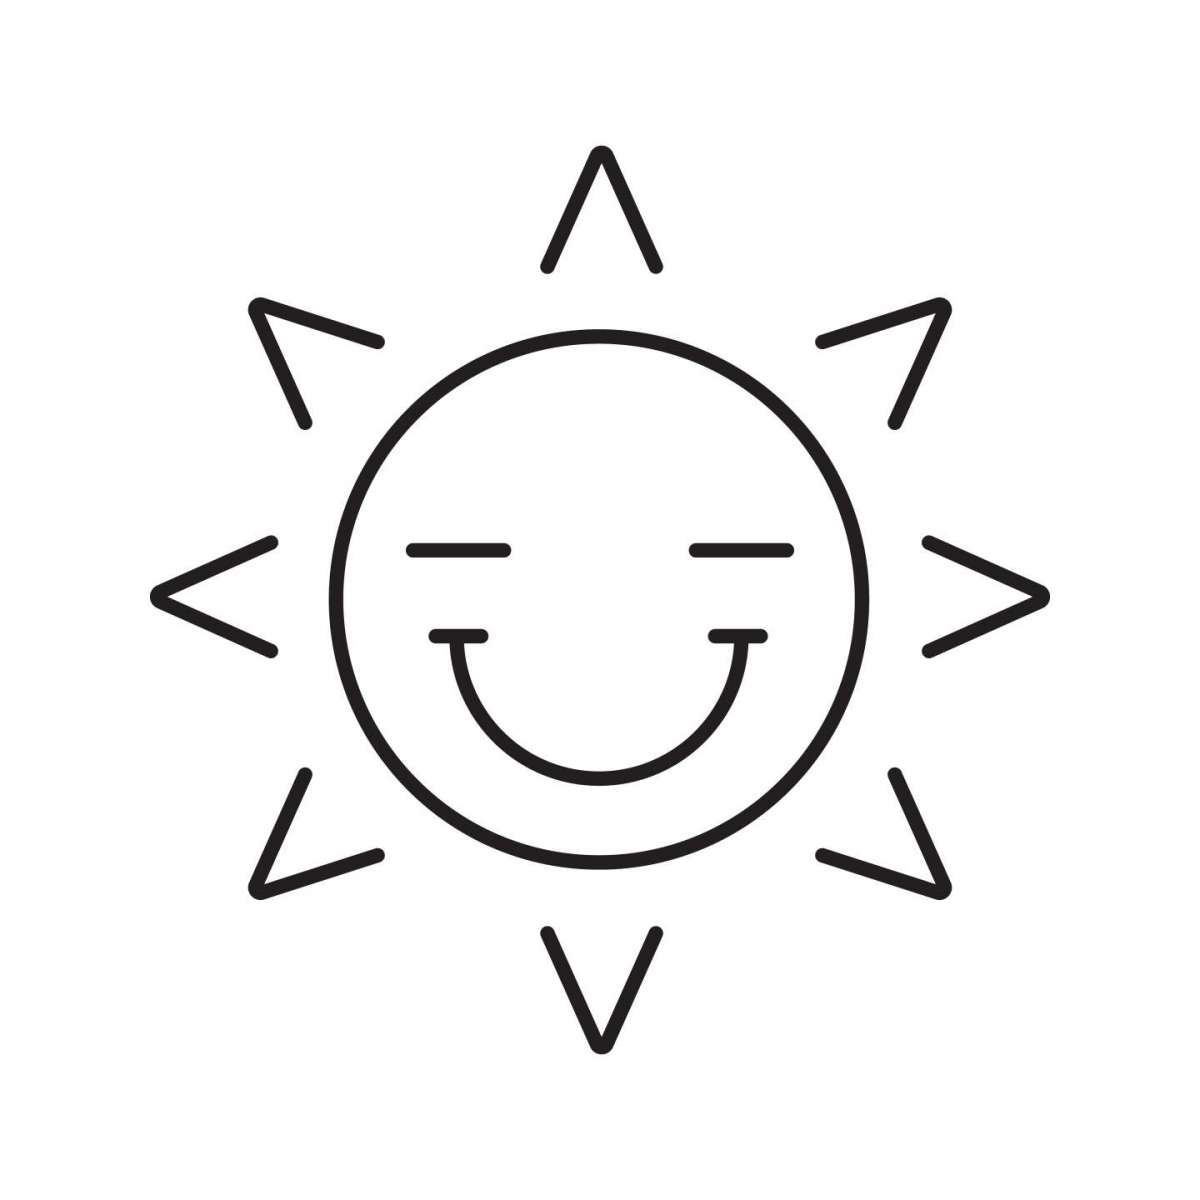 Disegno semplice del sole